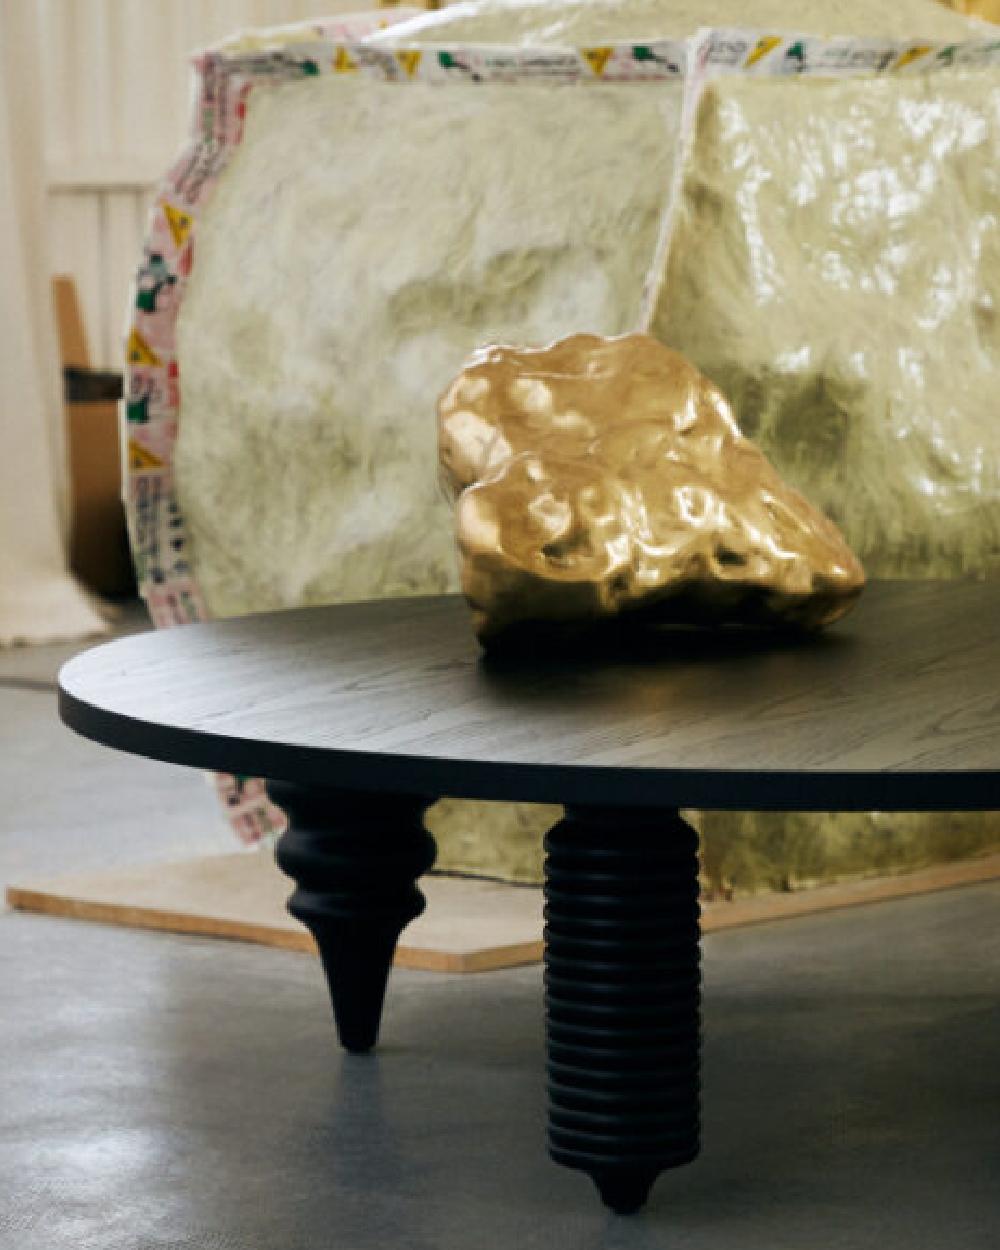 Der Multileg Low Table ist aus naturbelassenem Eschenholz mit einer glänzenden Lackierung und einer Glasplatte oder mit einer offenporigen Lackierung hergestellt. Sie ist funktional, einzigartig und unübersehbar.
Jaime Hayon hat das Multileg-Konzept